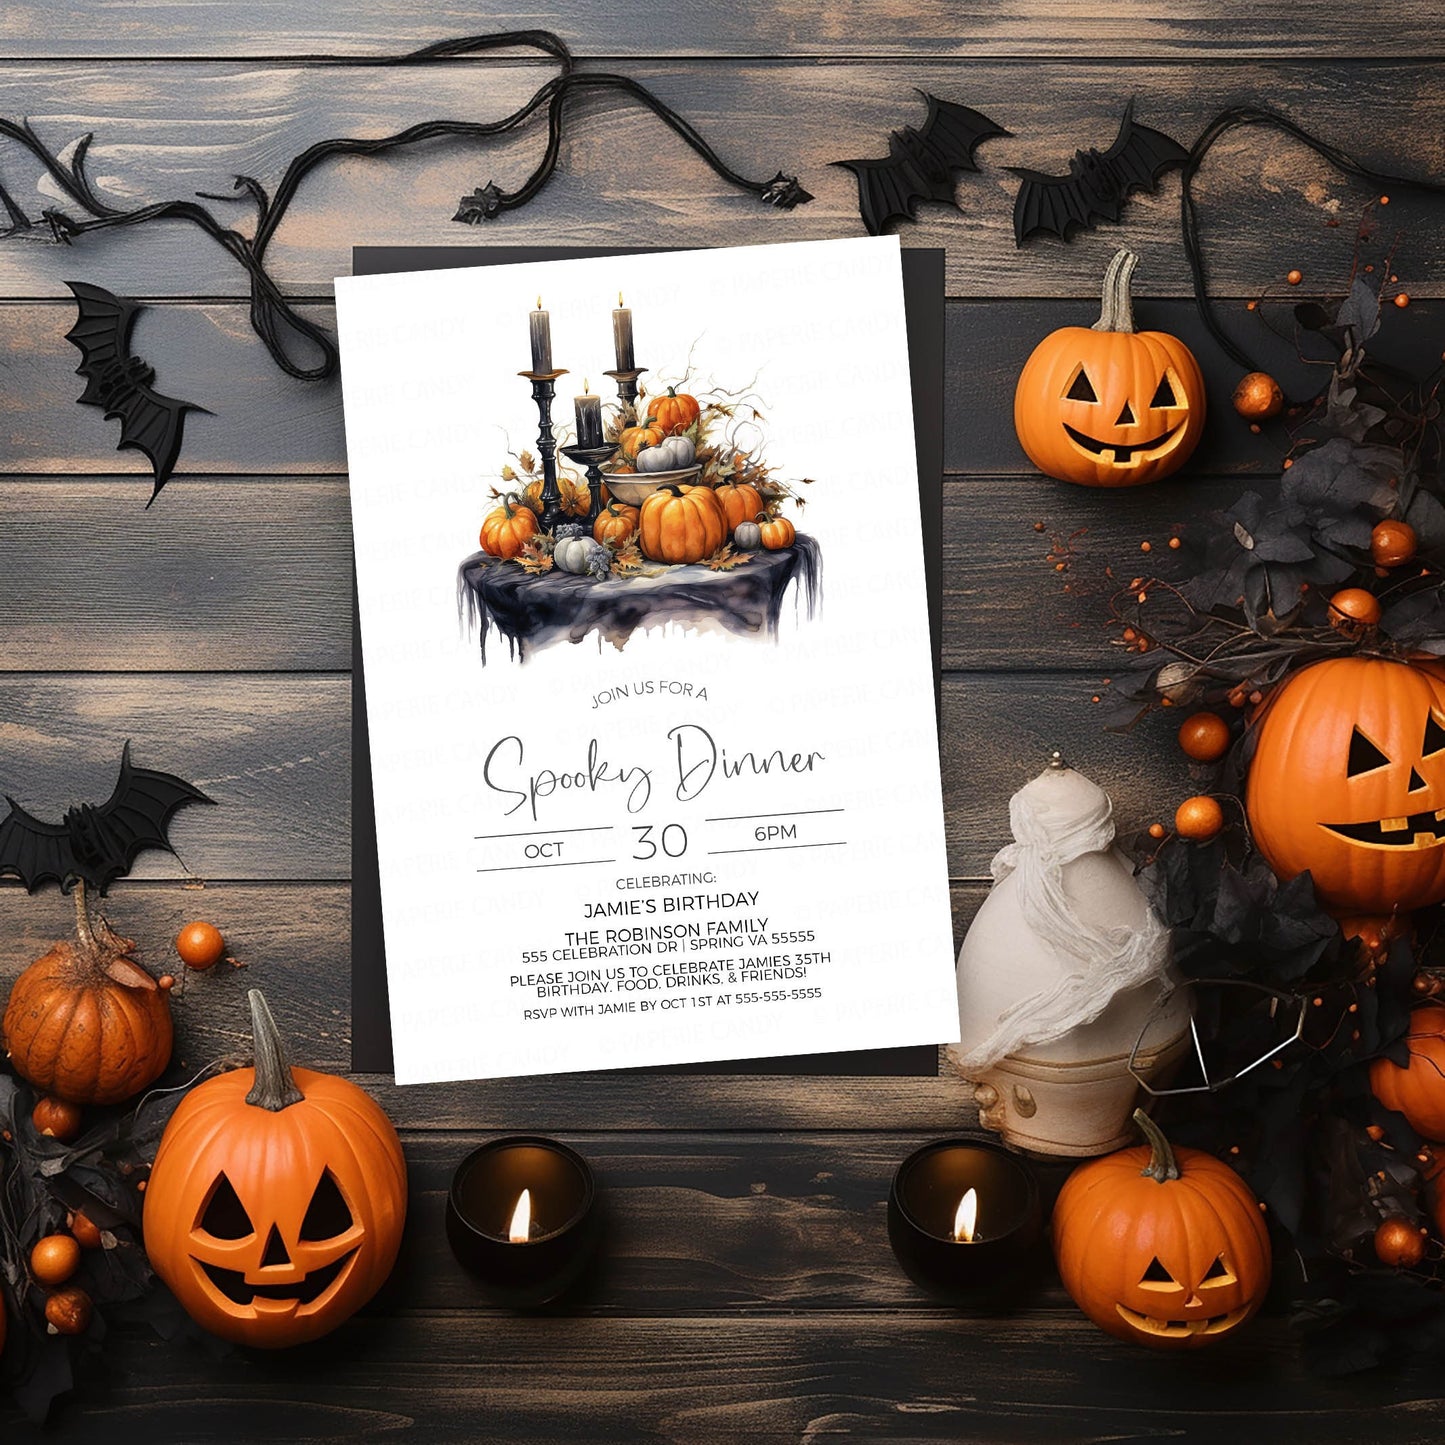 Halloween Dinner Invitation, Spooky Dinner Invite, Halloween Birthday Dinner, Staff Employee Volunteer Appreciation, Bridal Dinner, Editable